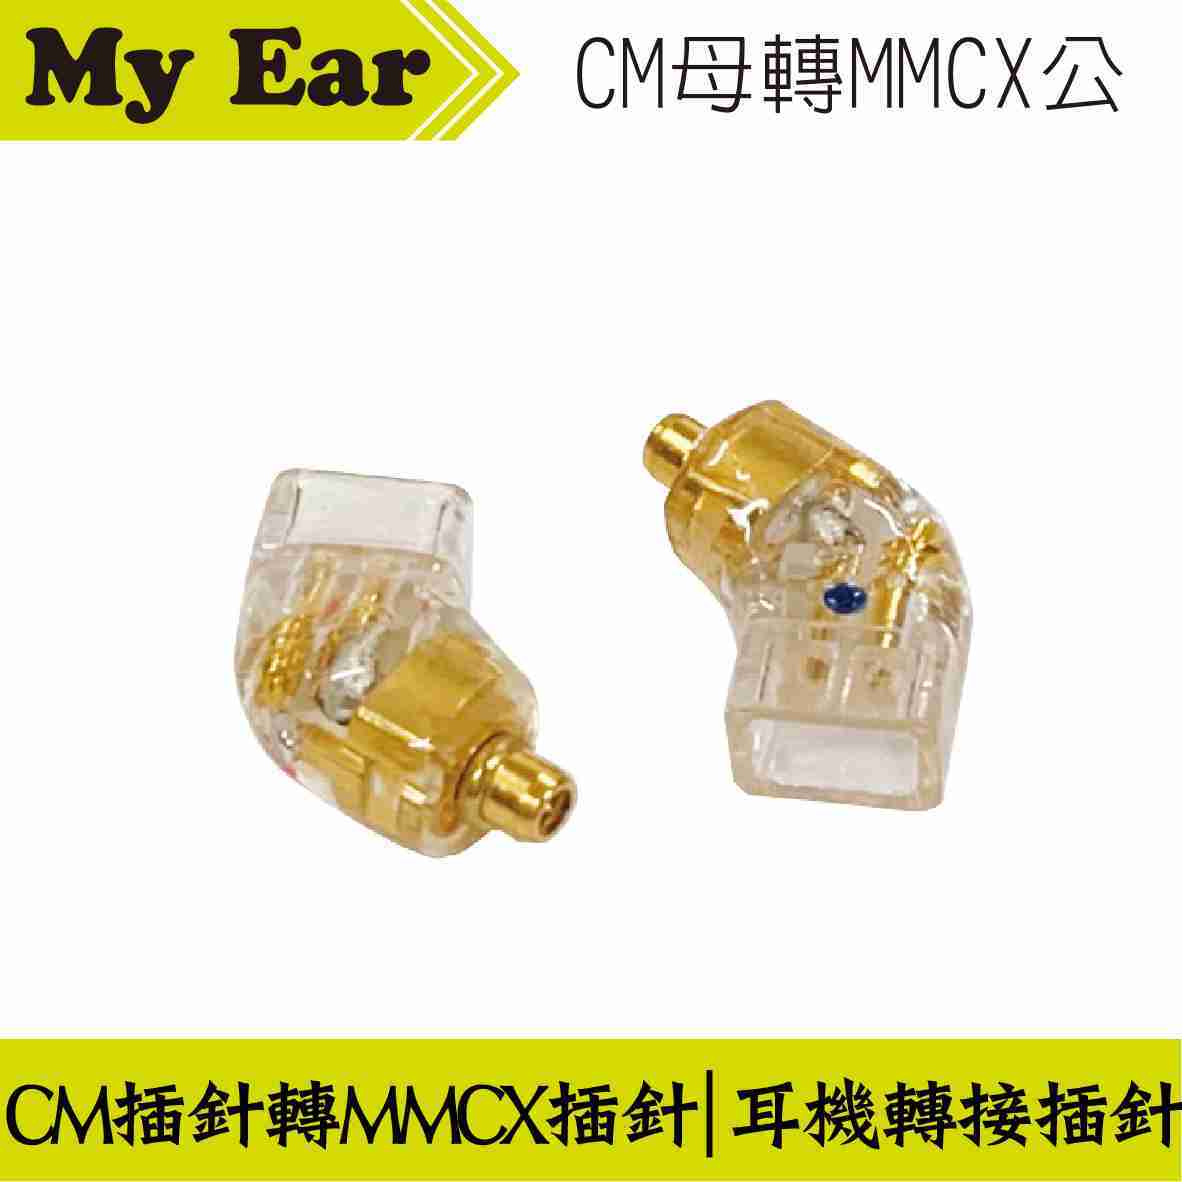 耳機 轉接頭 CM插針母轉MMCX插針公 | My Ear 耳機專門店